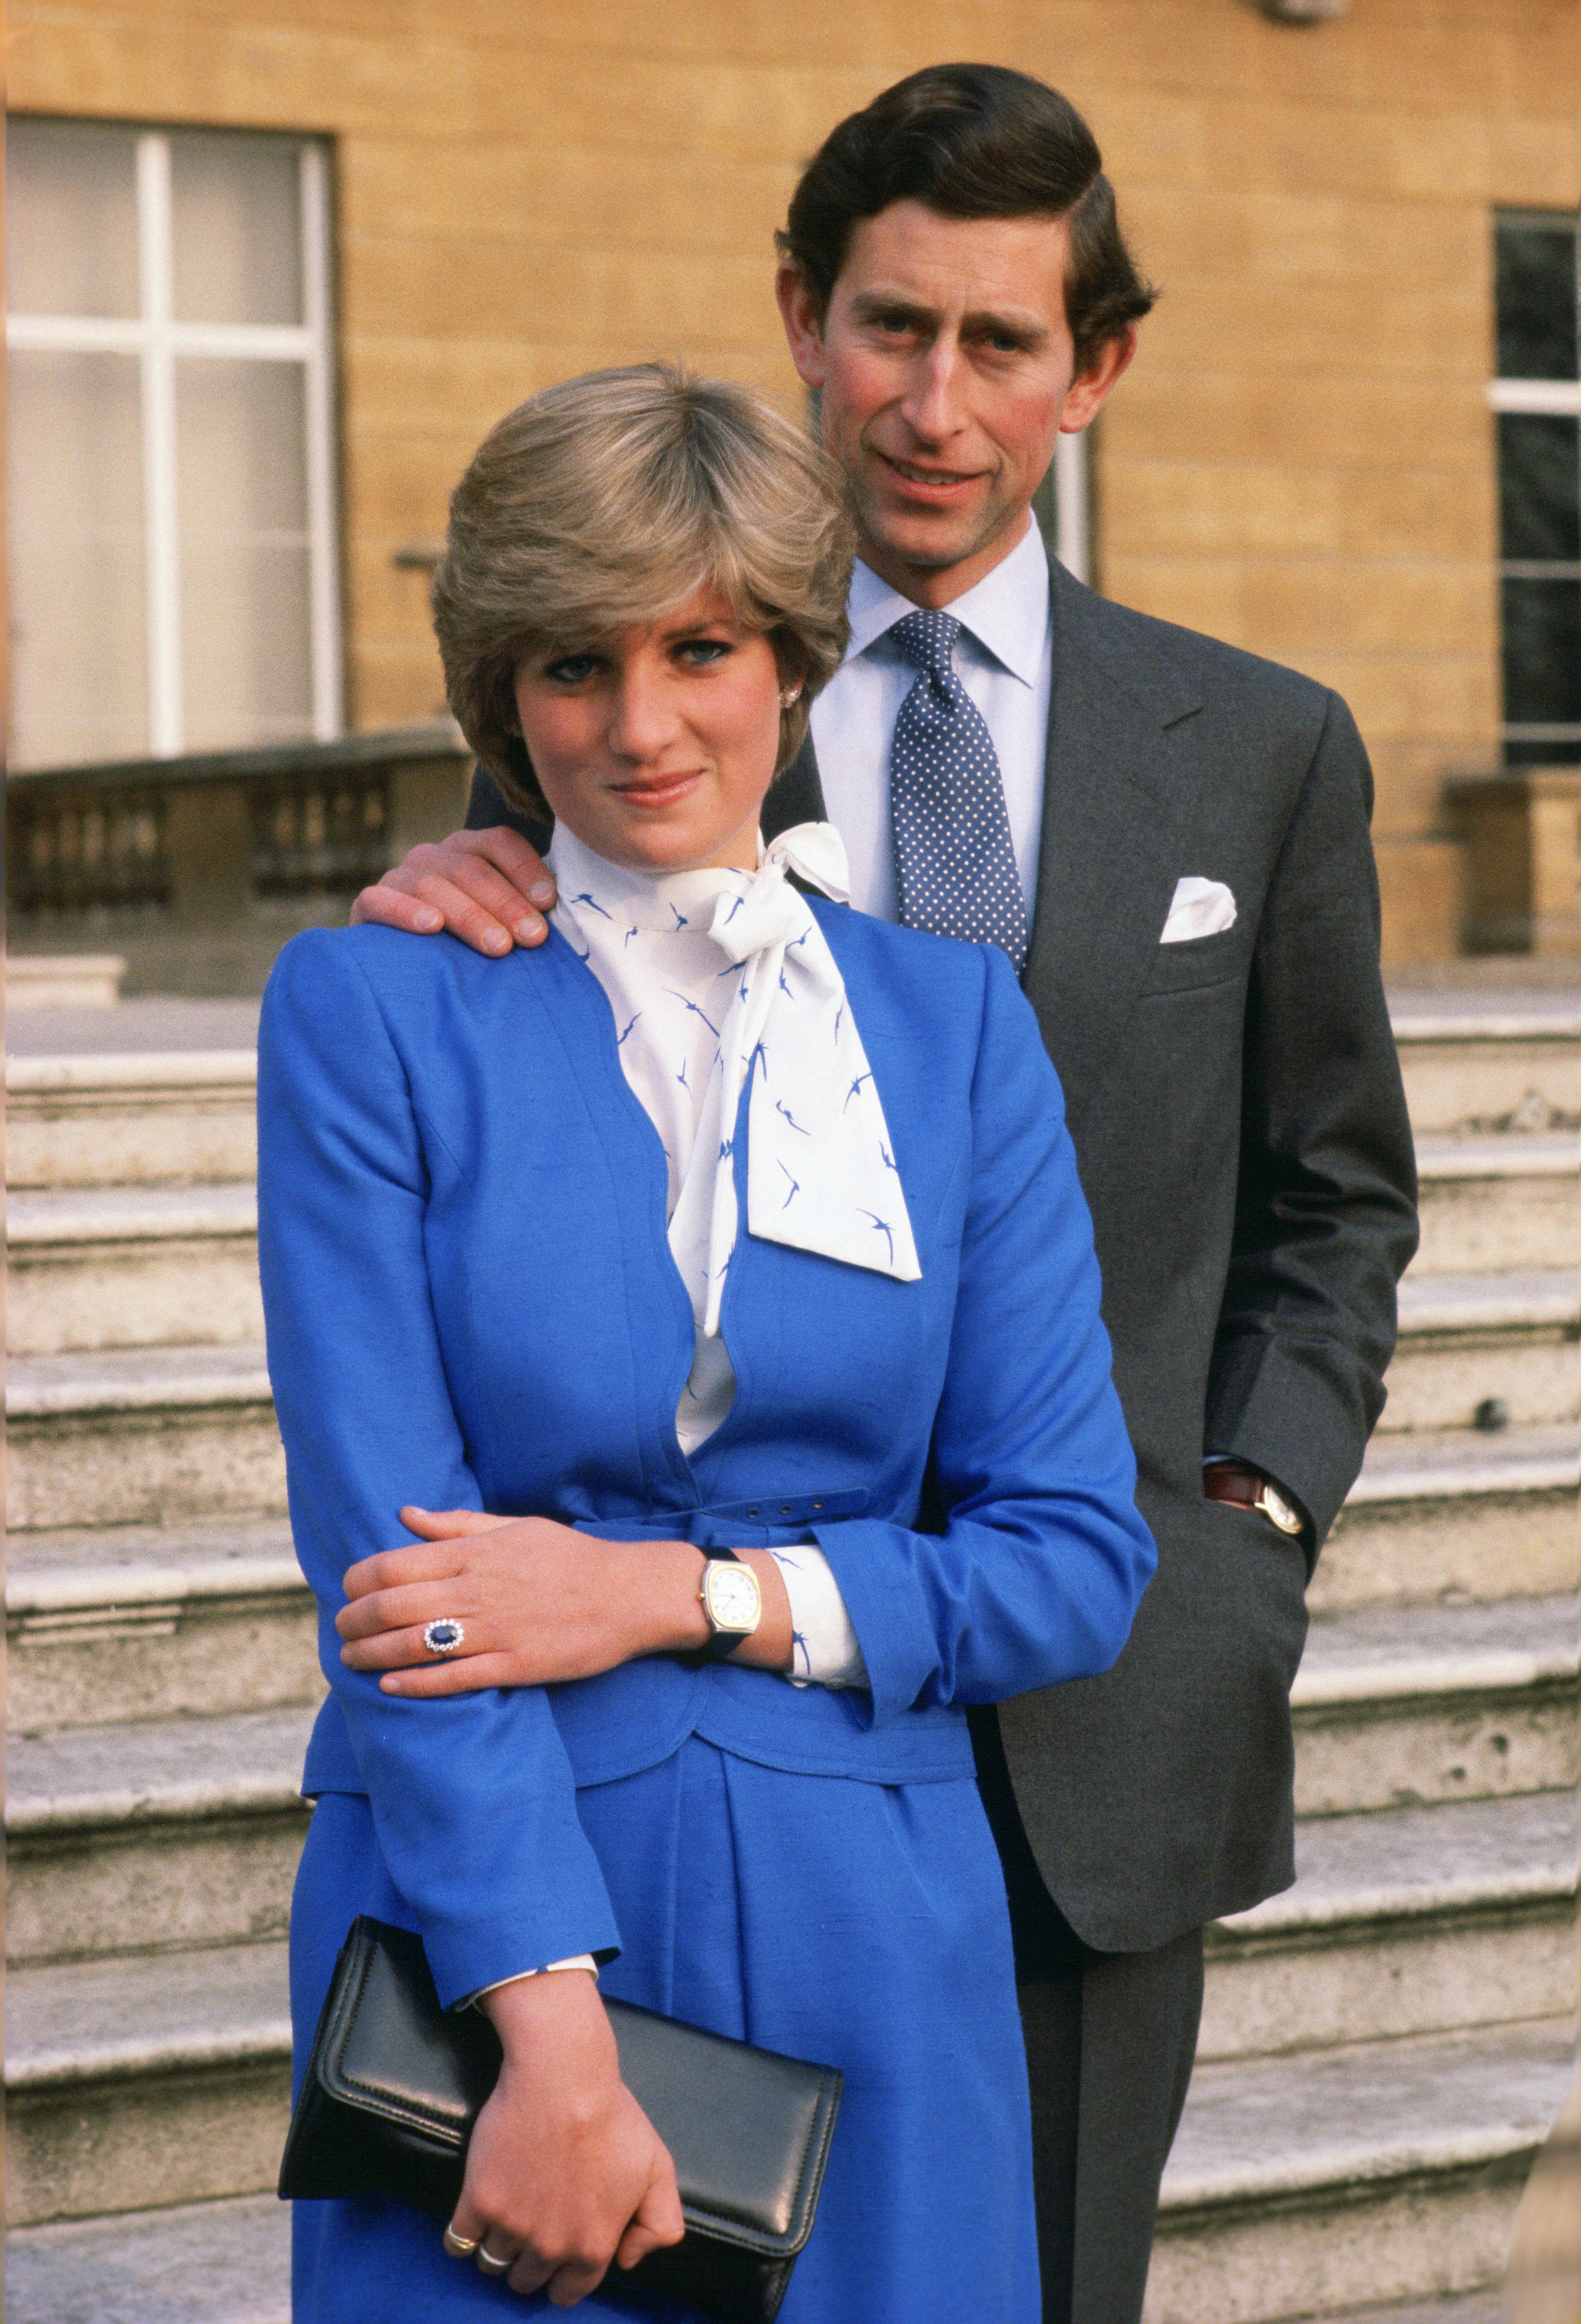 La princesse Diana et le prince Charles posent après avoir annoncé leurs fiançailles dans le parc du palais de Buckingham, le 24 février 1981. | Source : Getty Images